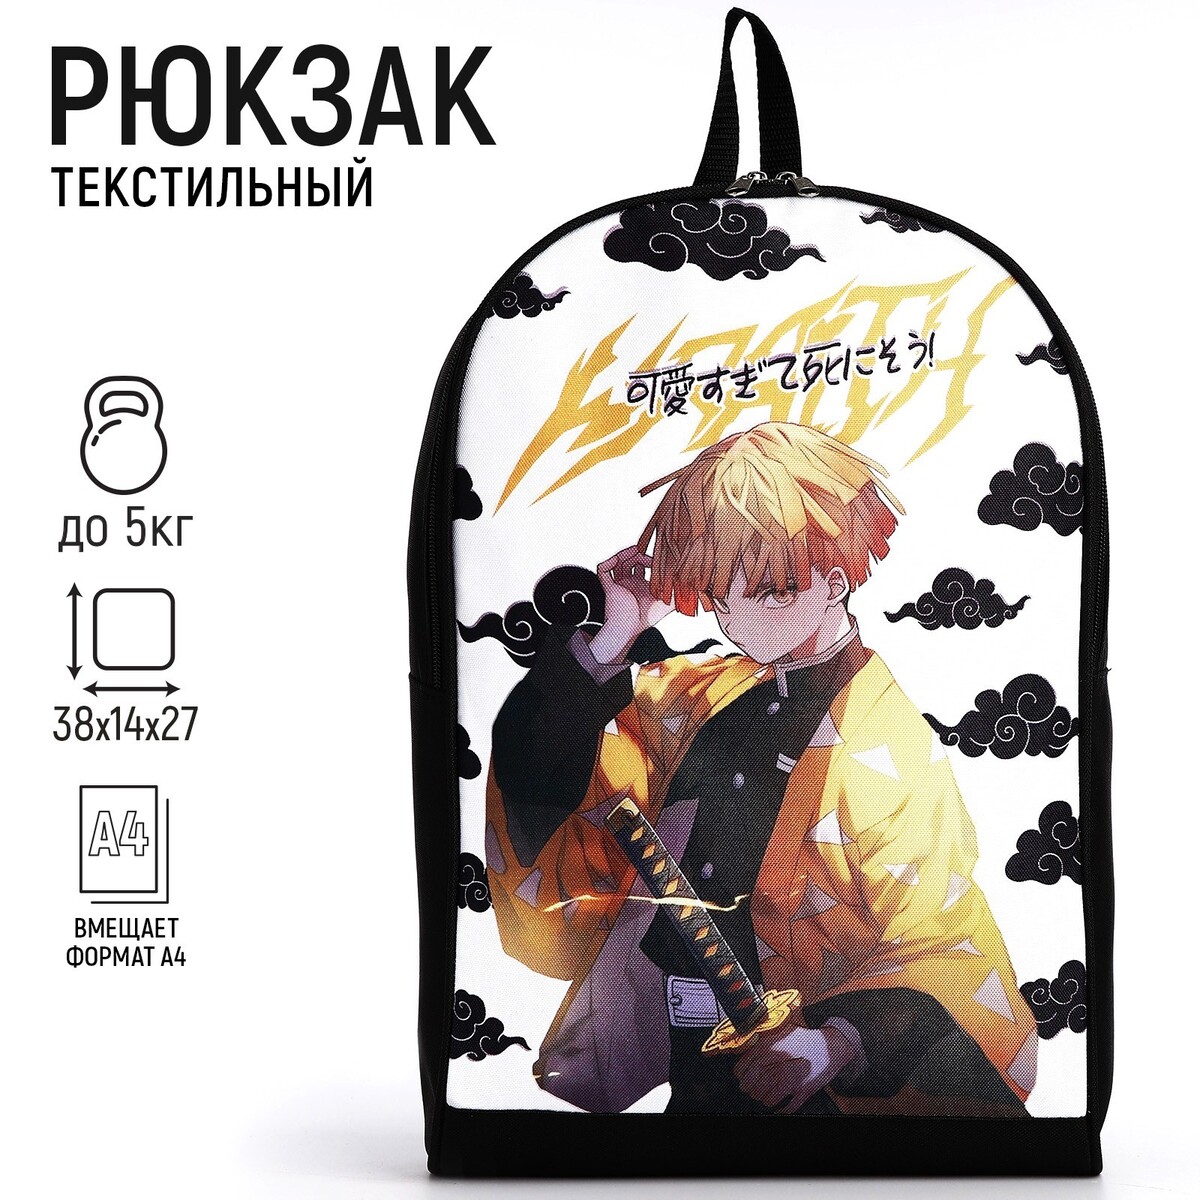 Рюкзак текстильный аниме, 38х14х27 см, цвет черный, белый рюкзак текстильный светоотражающий